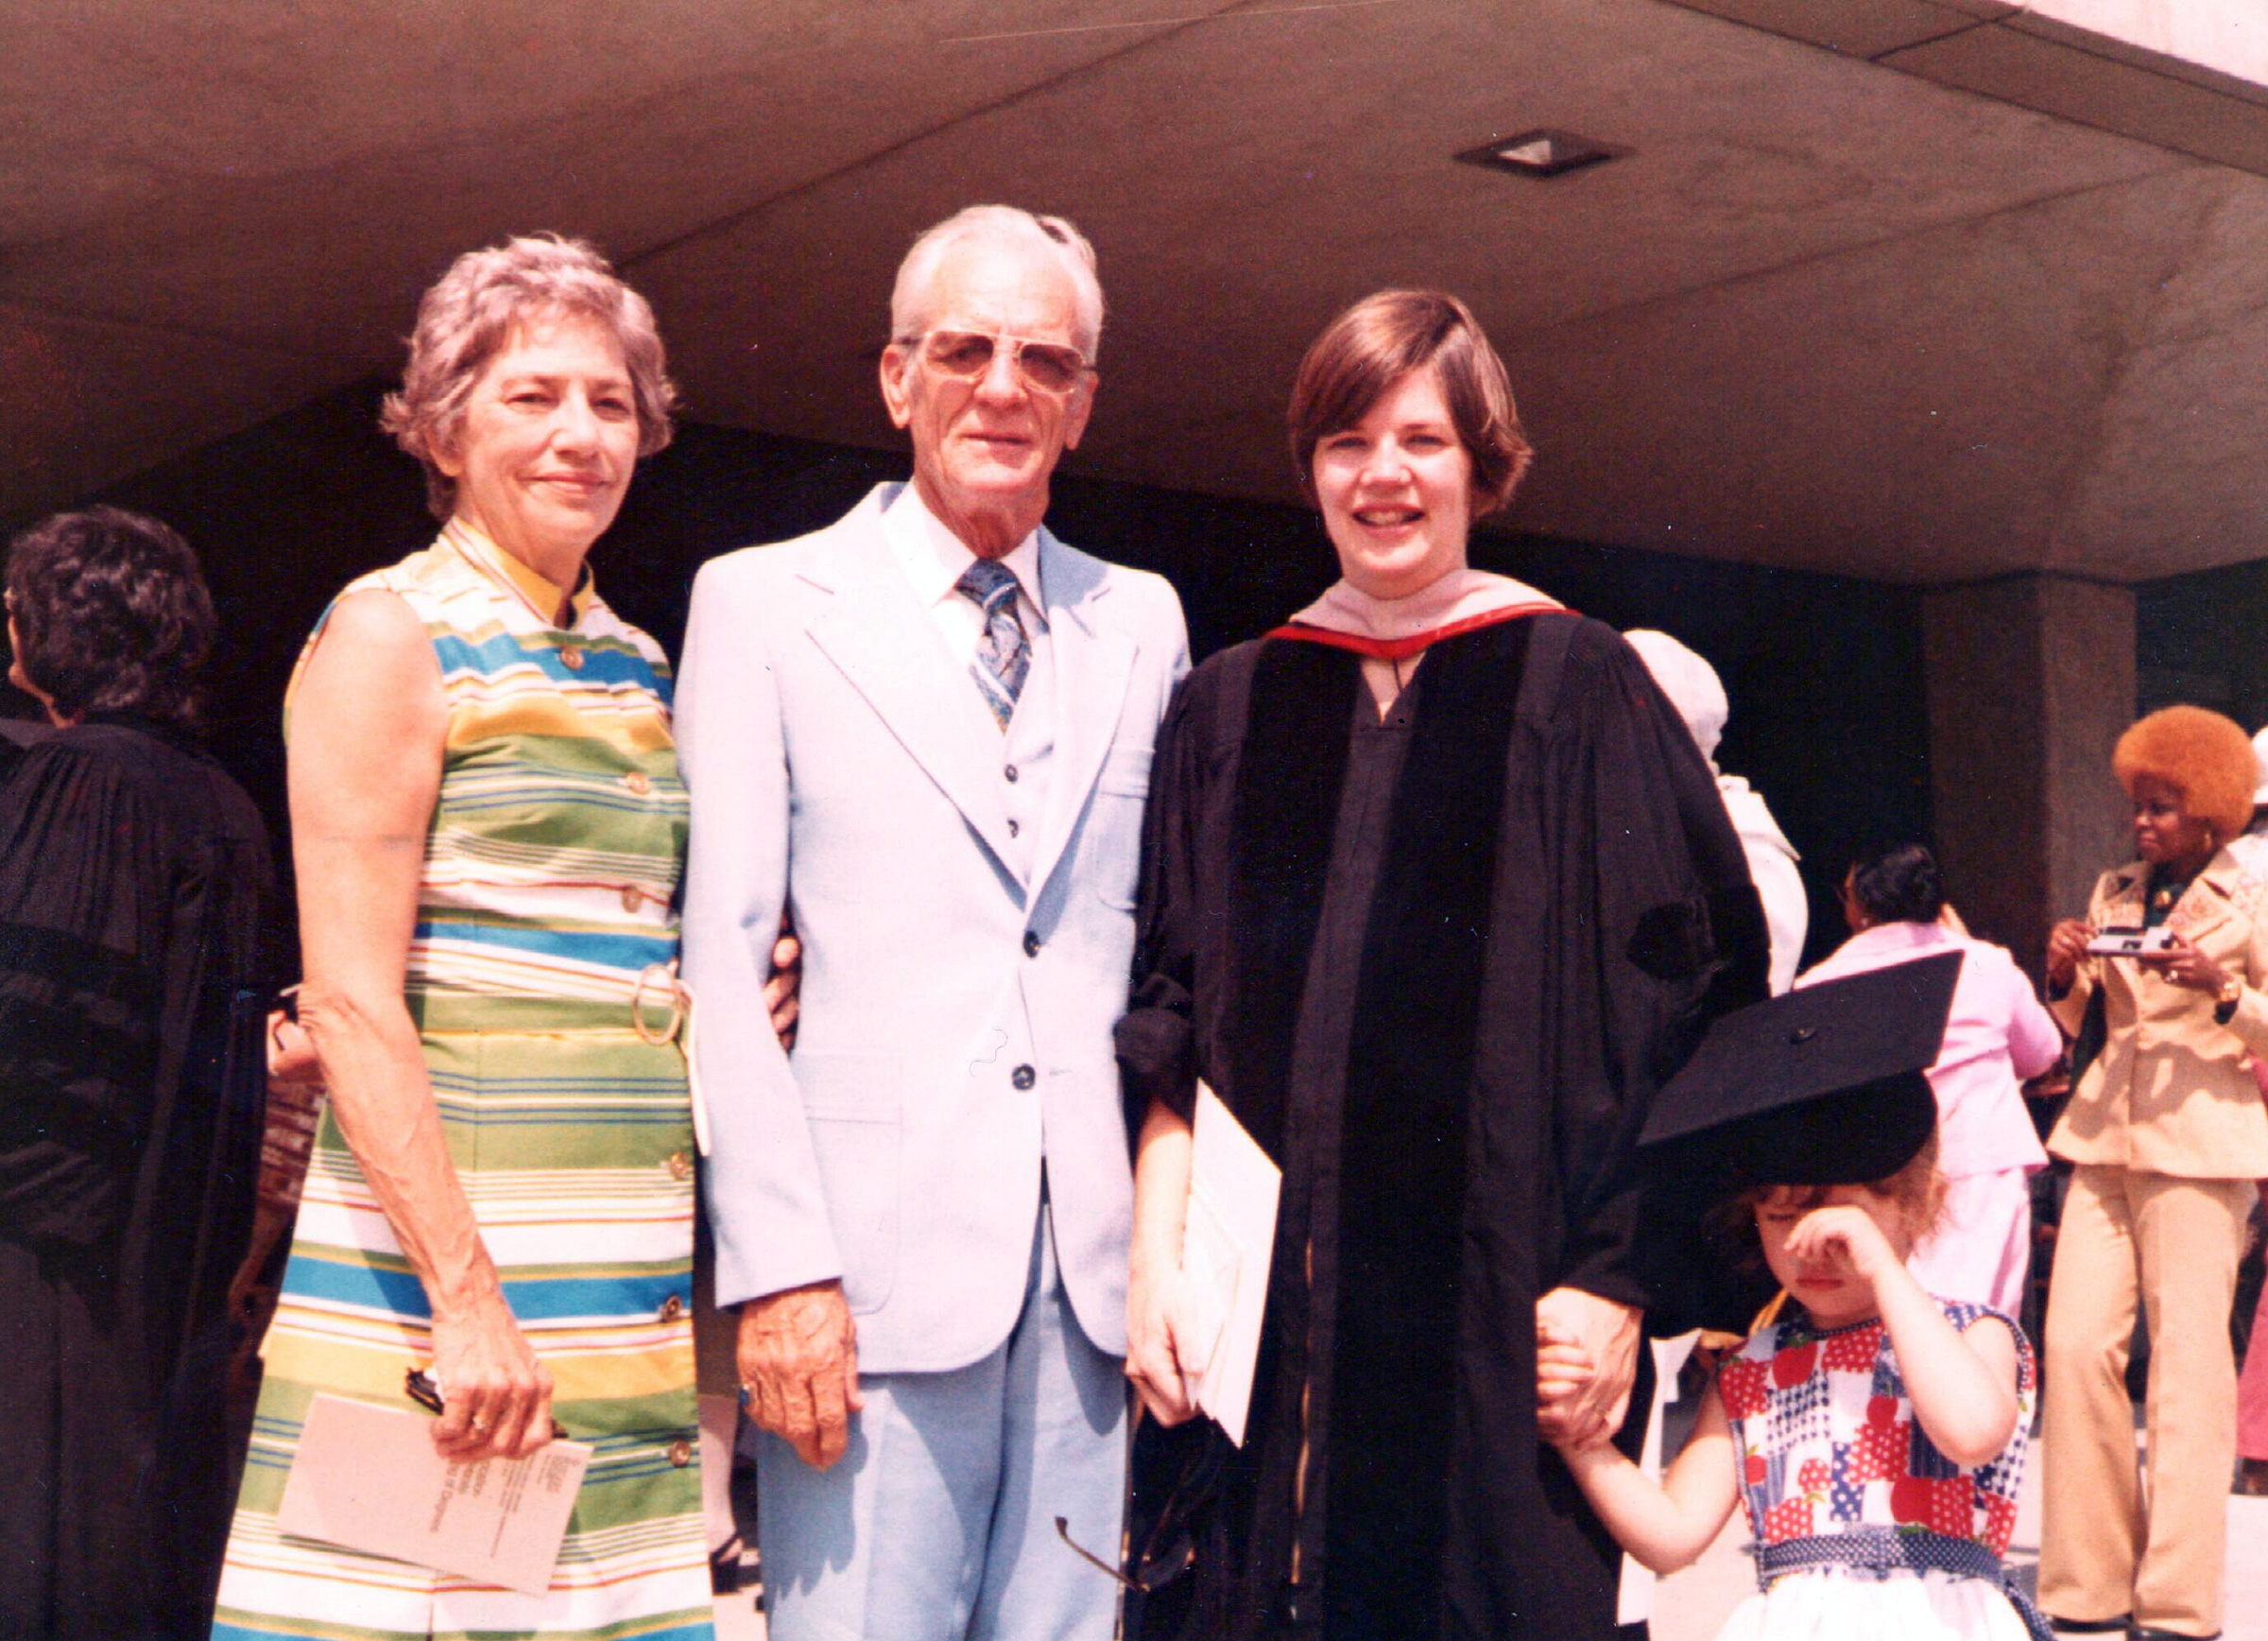 Warren with her parents Pauline and Donald Jones Herring at Rutgers Law graduation, circa 1976. (Courtesy Elizabeth Warren)